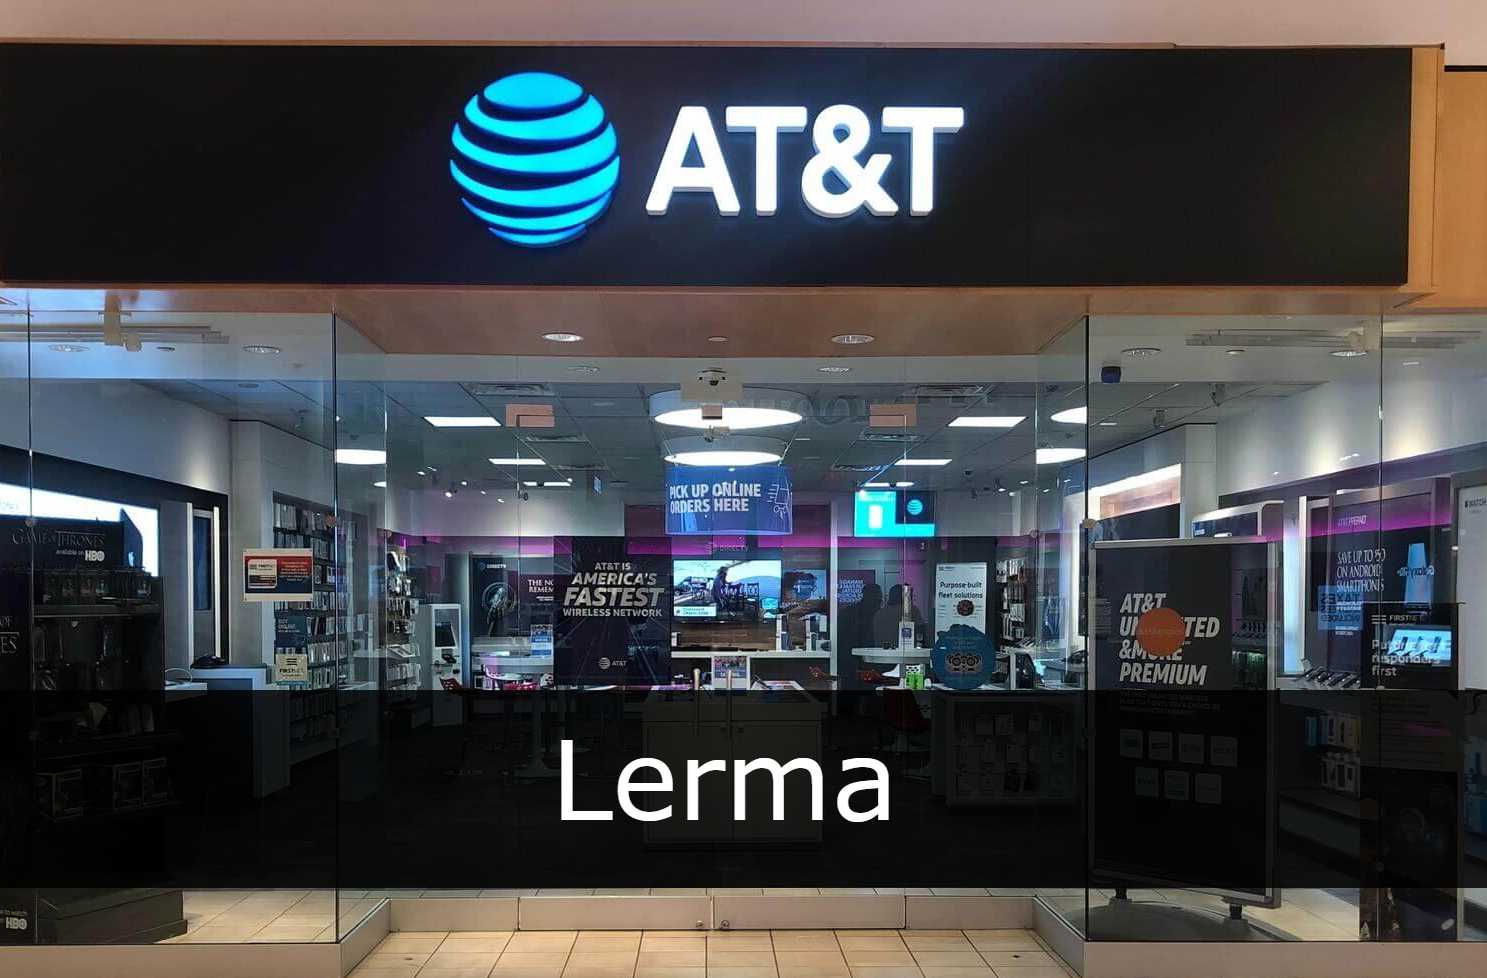 AT&T Lerma